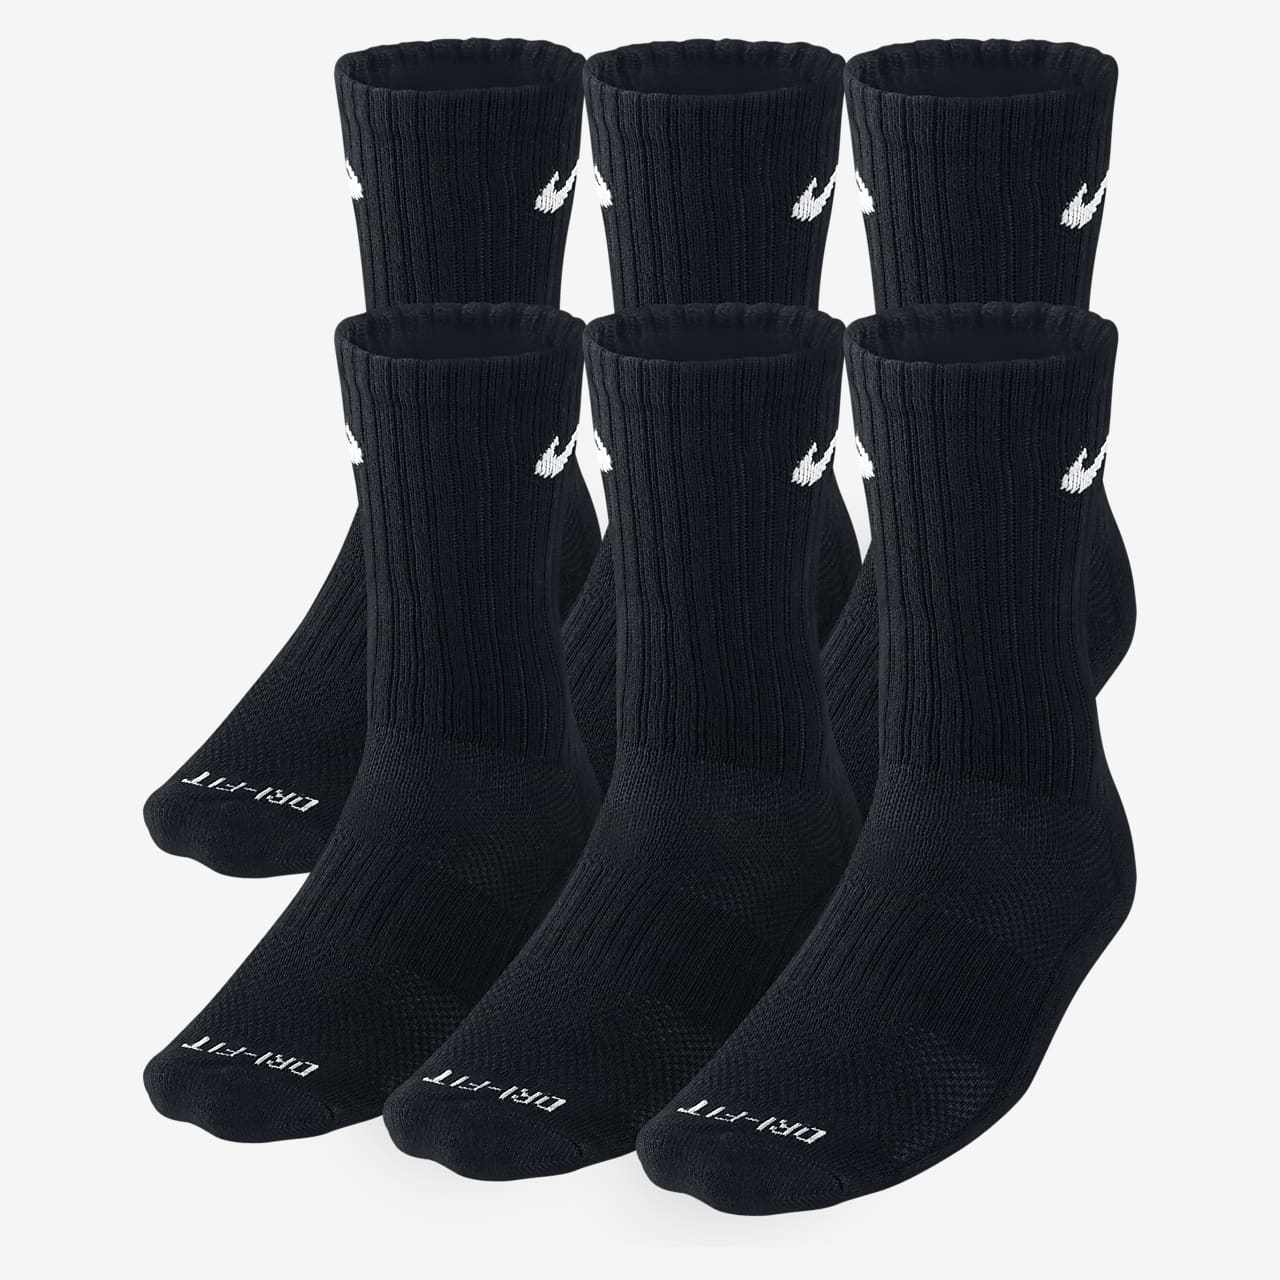 elite socks 2k19